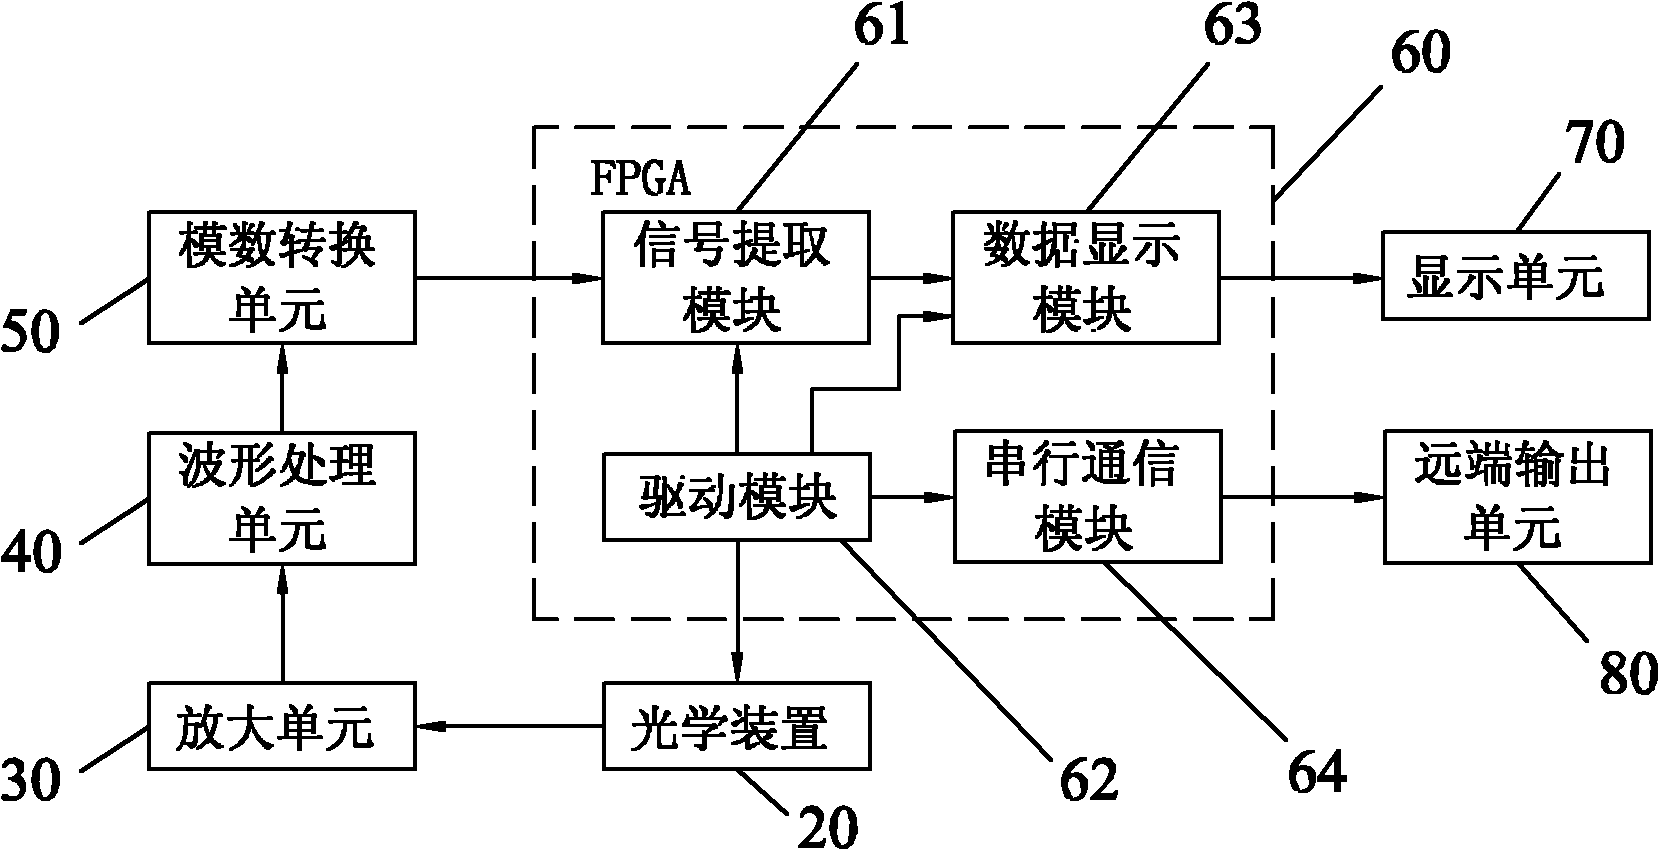 FPGA (Field Programmable Gate Array) based laser diameter measuring method